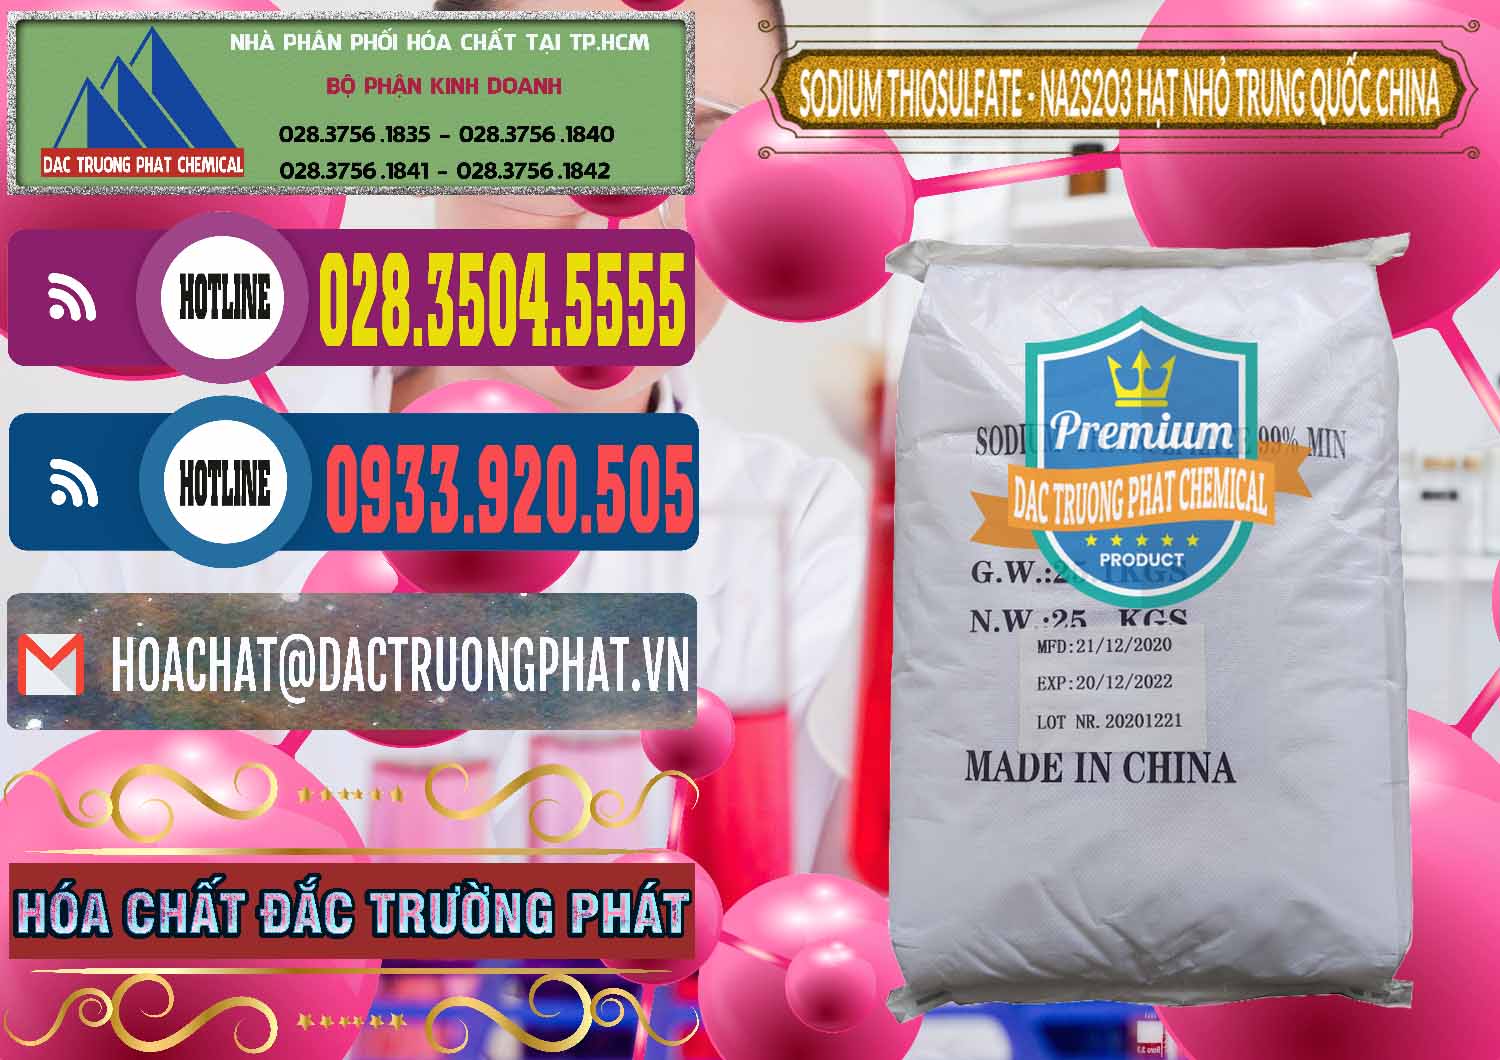 Đơn vị bán và phân phối Sodium Thiosulfate - NA2S2O3 Hạt Nhỏ Trung Quốc China - 0204 - Công ty chuyên bán ( cung cấp ) hóa chất tại TP.HCM - muabanhoachat.com.vn